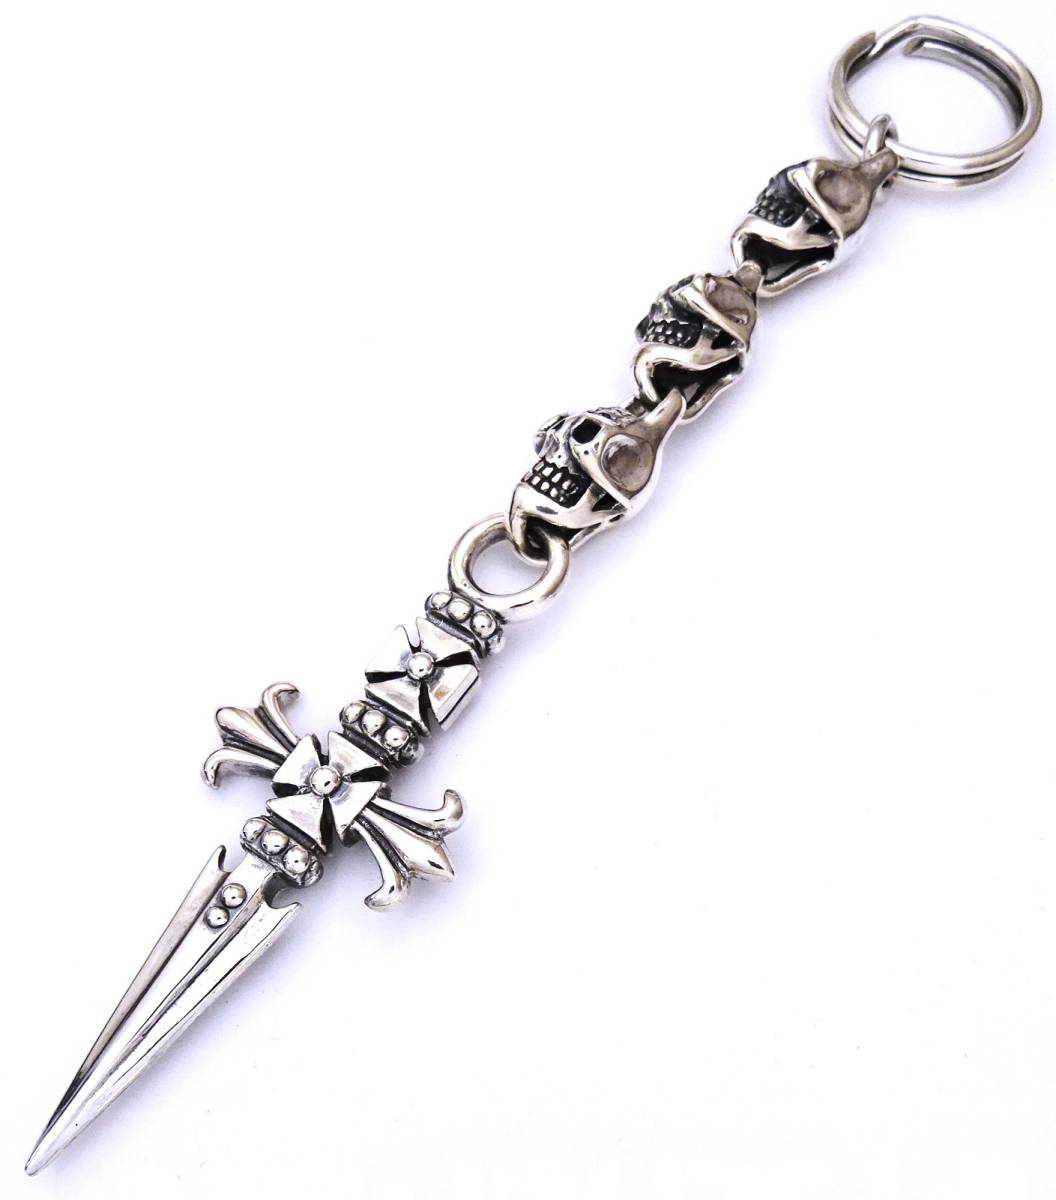 * серебряный 925 3 Skull Cross daga- цепочка для ключей кольцо для ключей новый товар не использовался * 3 Skull Cross daga- цепочка для ключей кольцо для ключей 